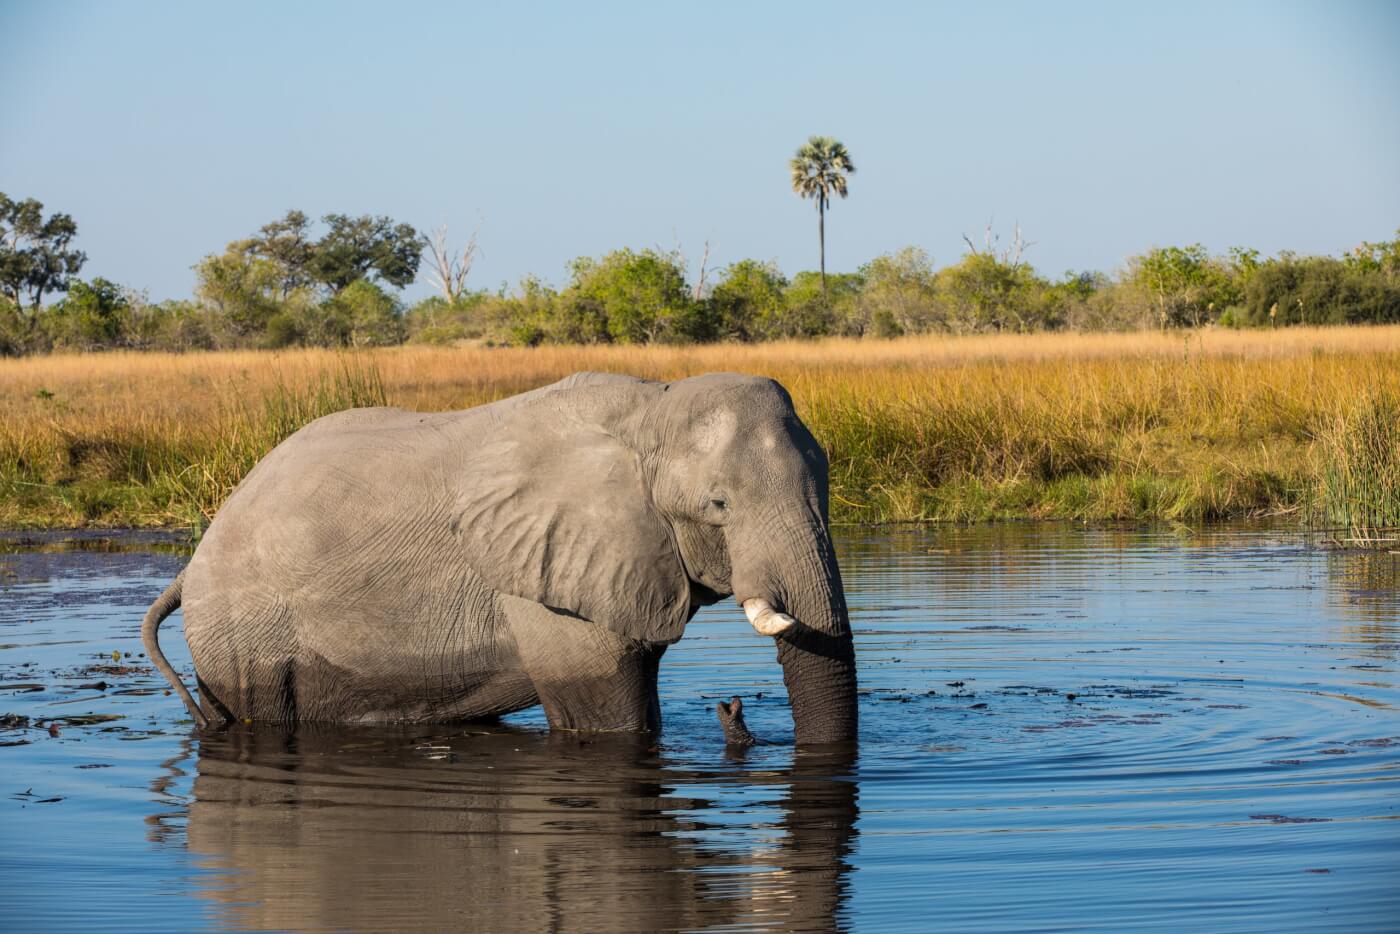 elephant walking in a body of water